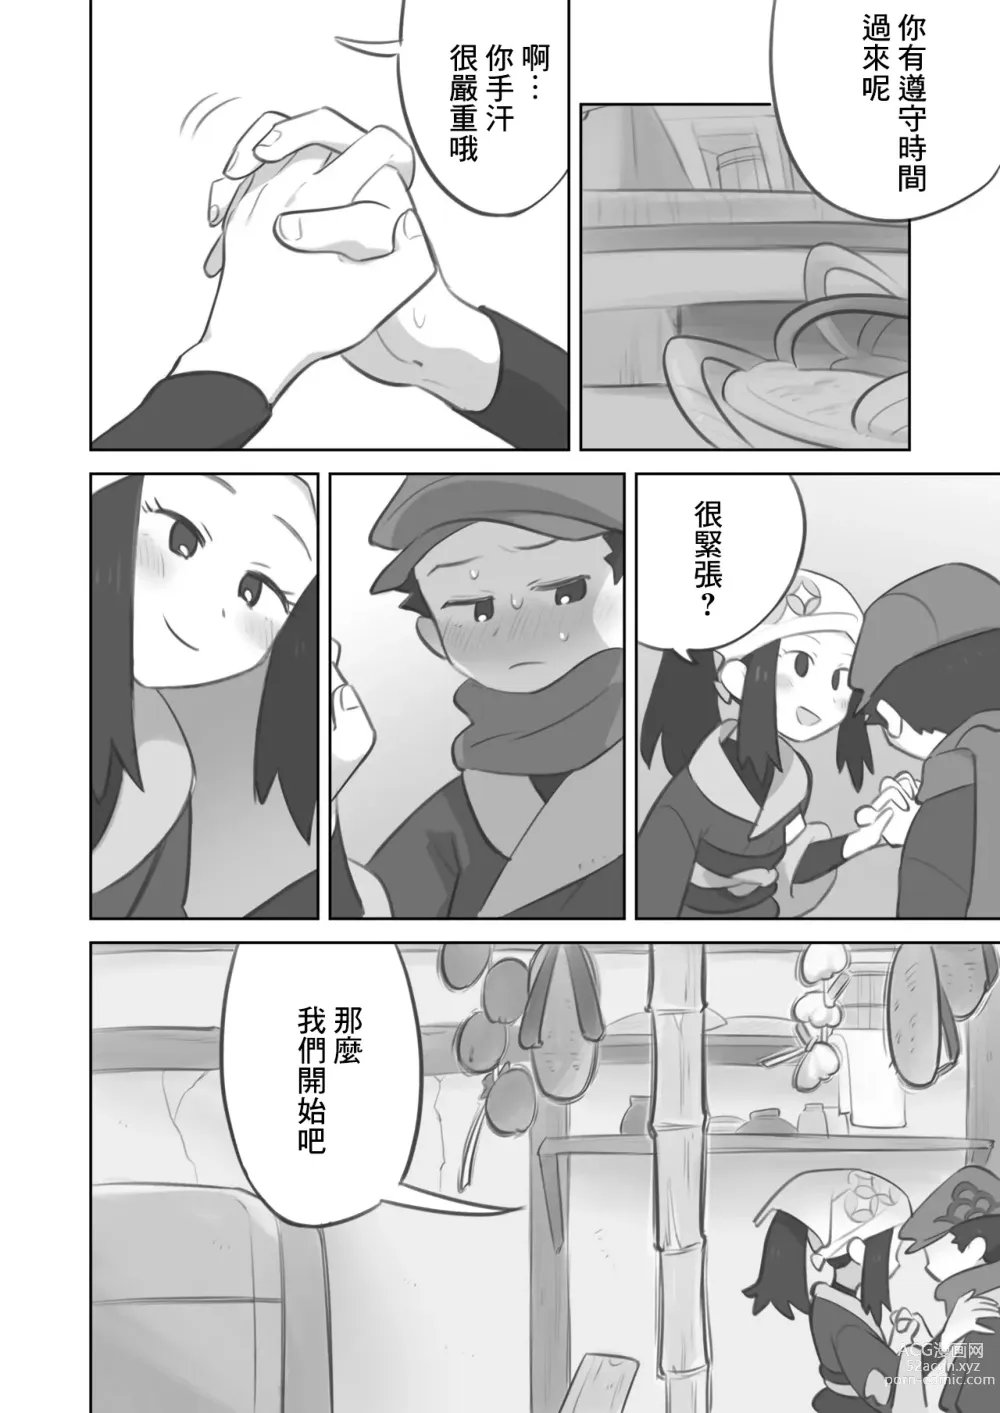 Page 2 of doujinshi Tekoki Manga